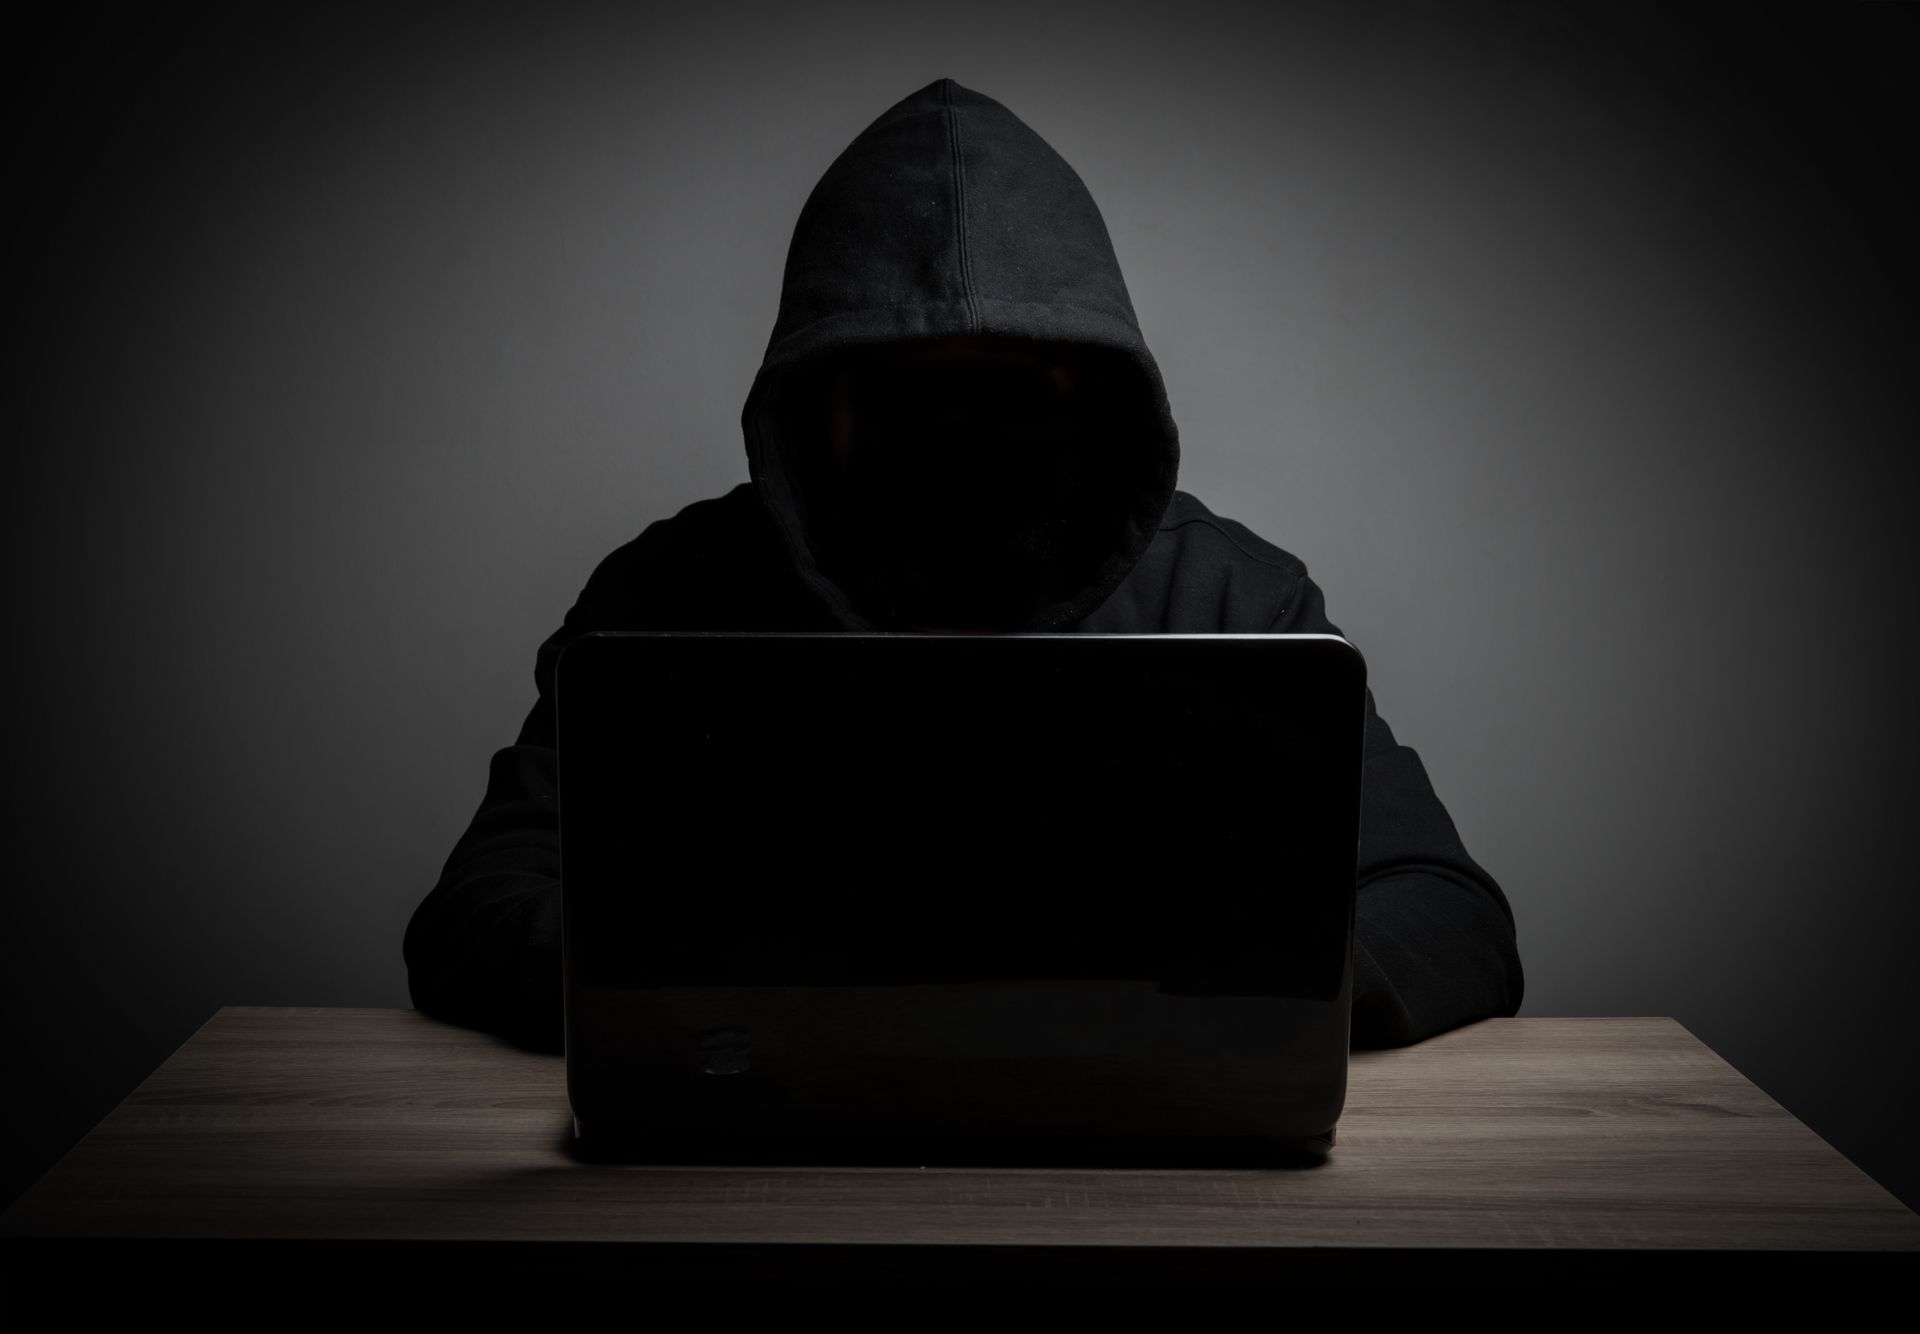 Łamanie wyroku hakera GTA 6: wpływ Ariona Kurtaja na cyber sagę Lapsus$